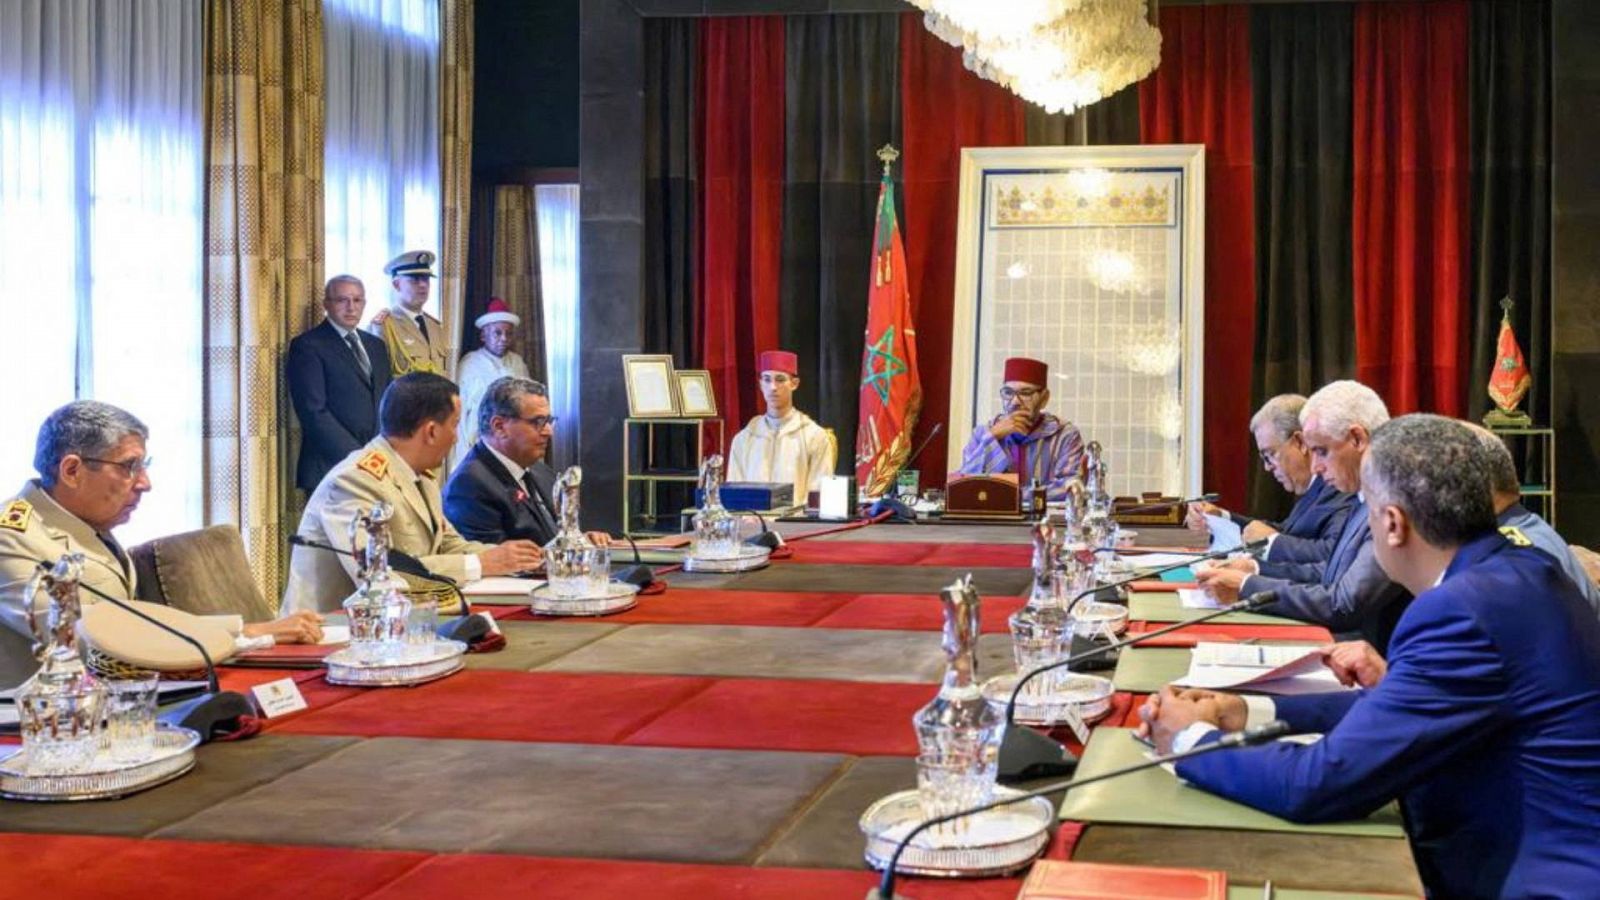 Reunión presidida por Mohamed VI el sábado en Rabat, para responder a la emergencia del terremoto. Fuente: Agencia de Noticias Marroquí, vía Reuters.